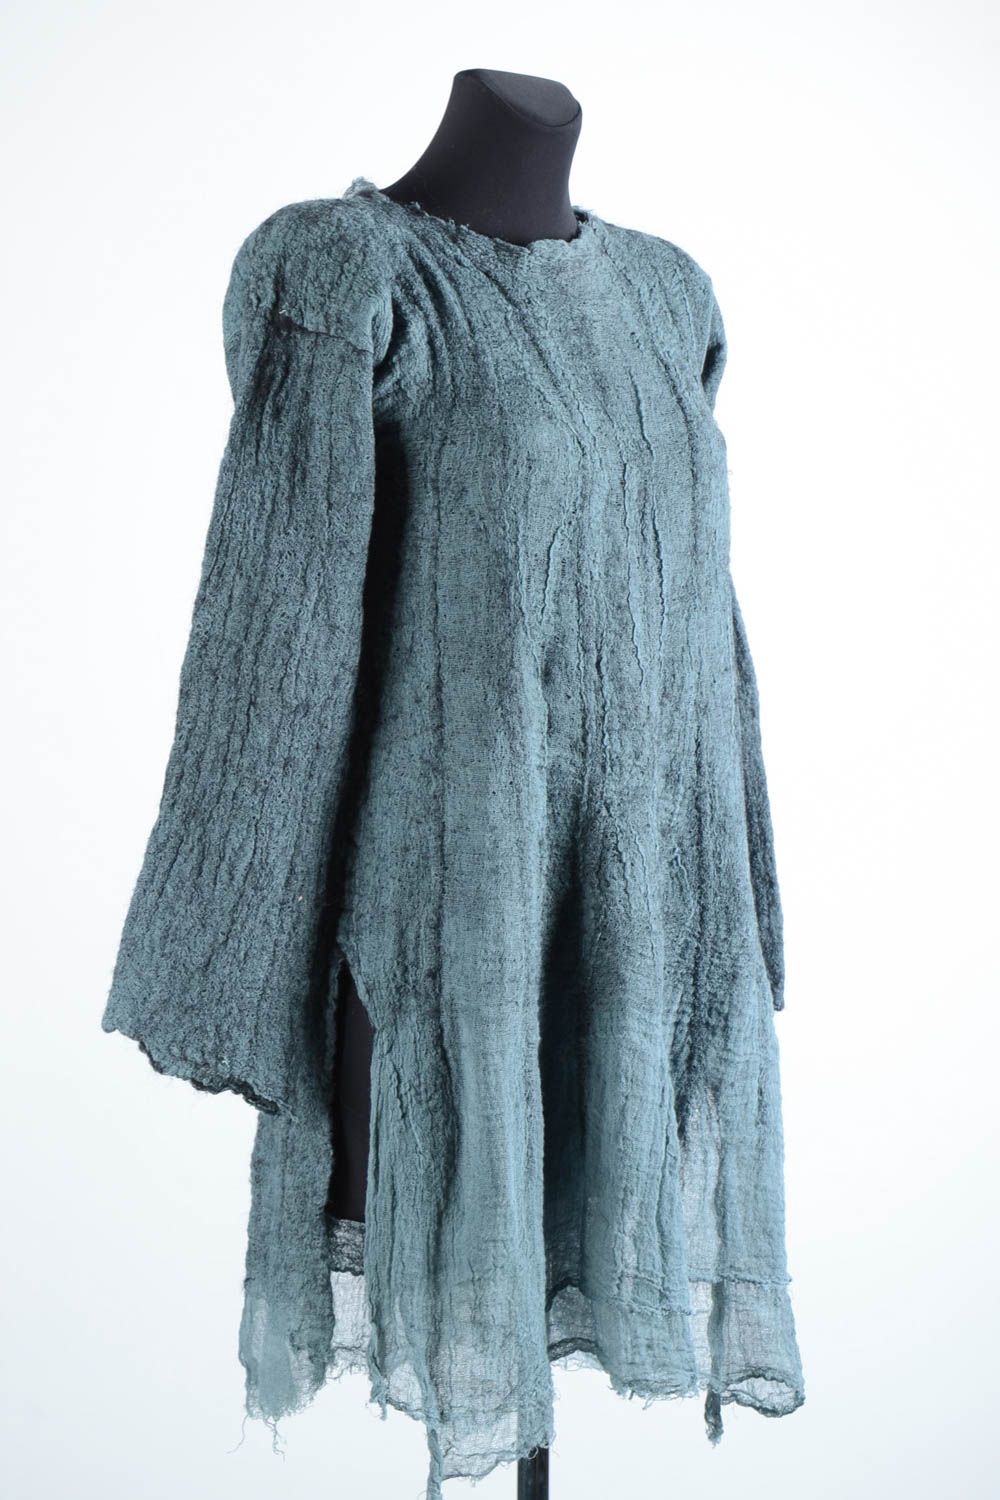 Langes Kleid handmade Damen Kleid Herbst Kleidung aus Naturfasern in Grau schön foto 3